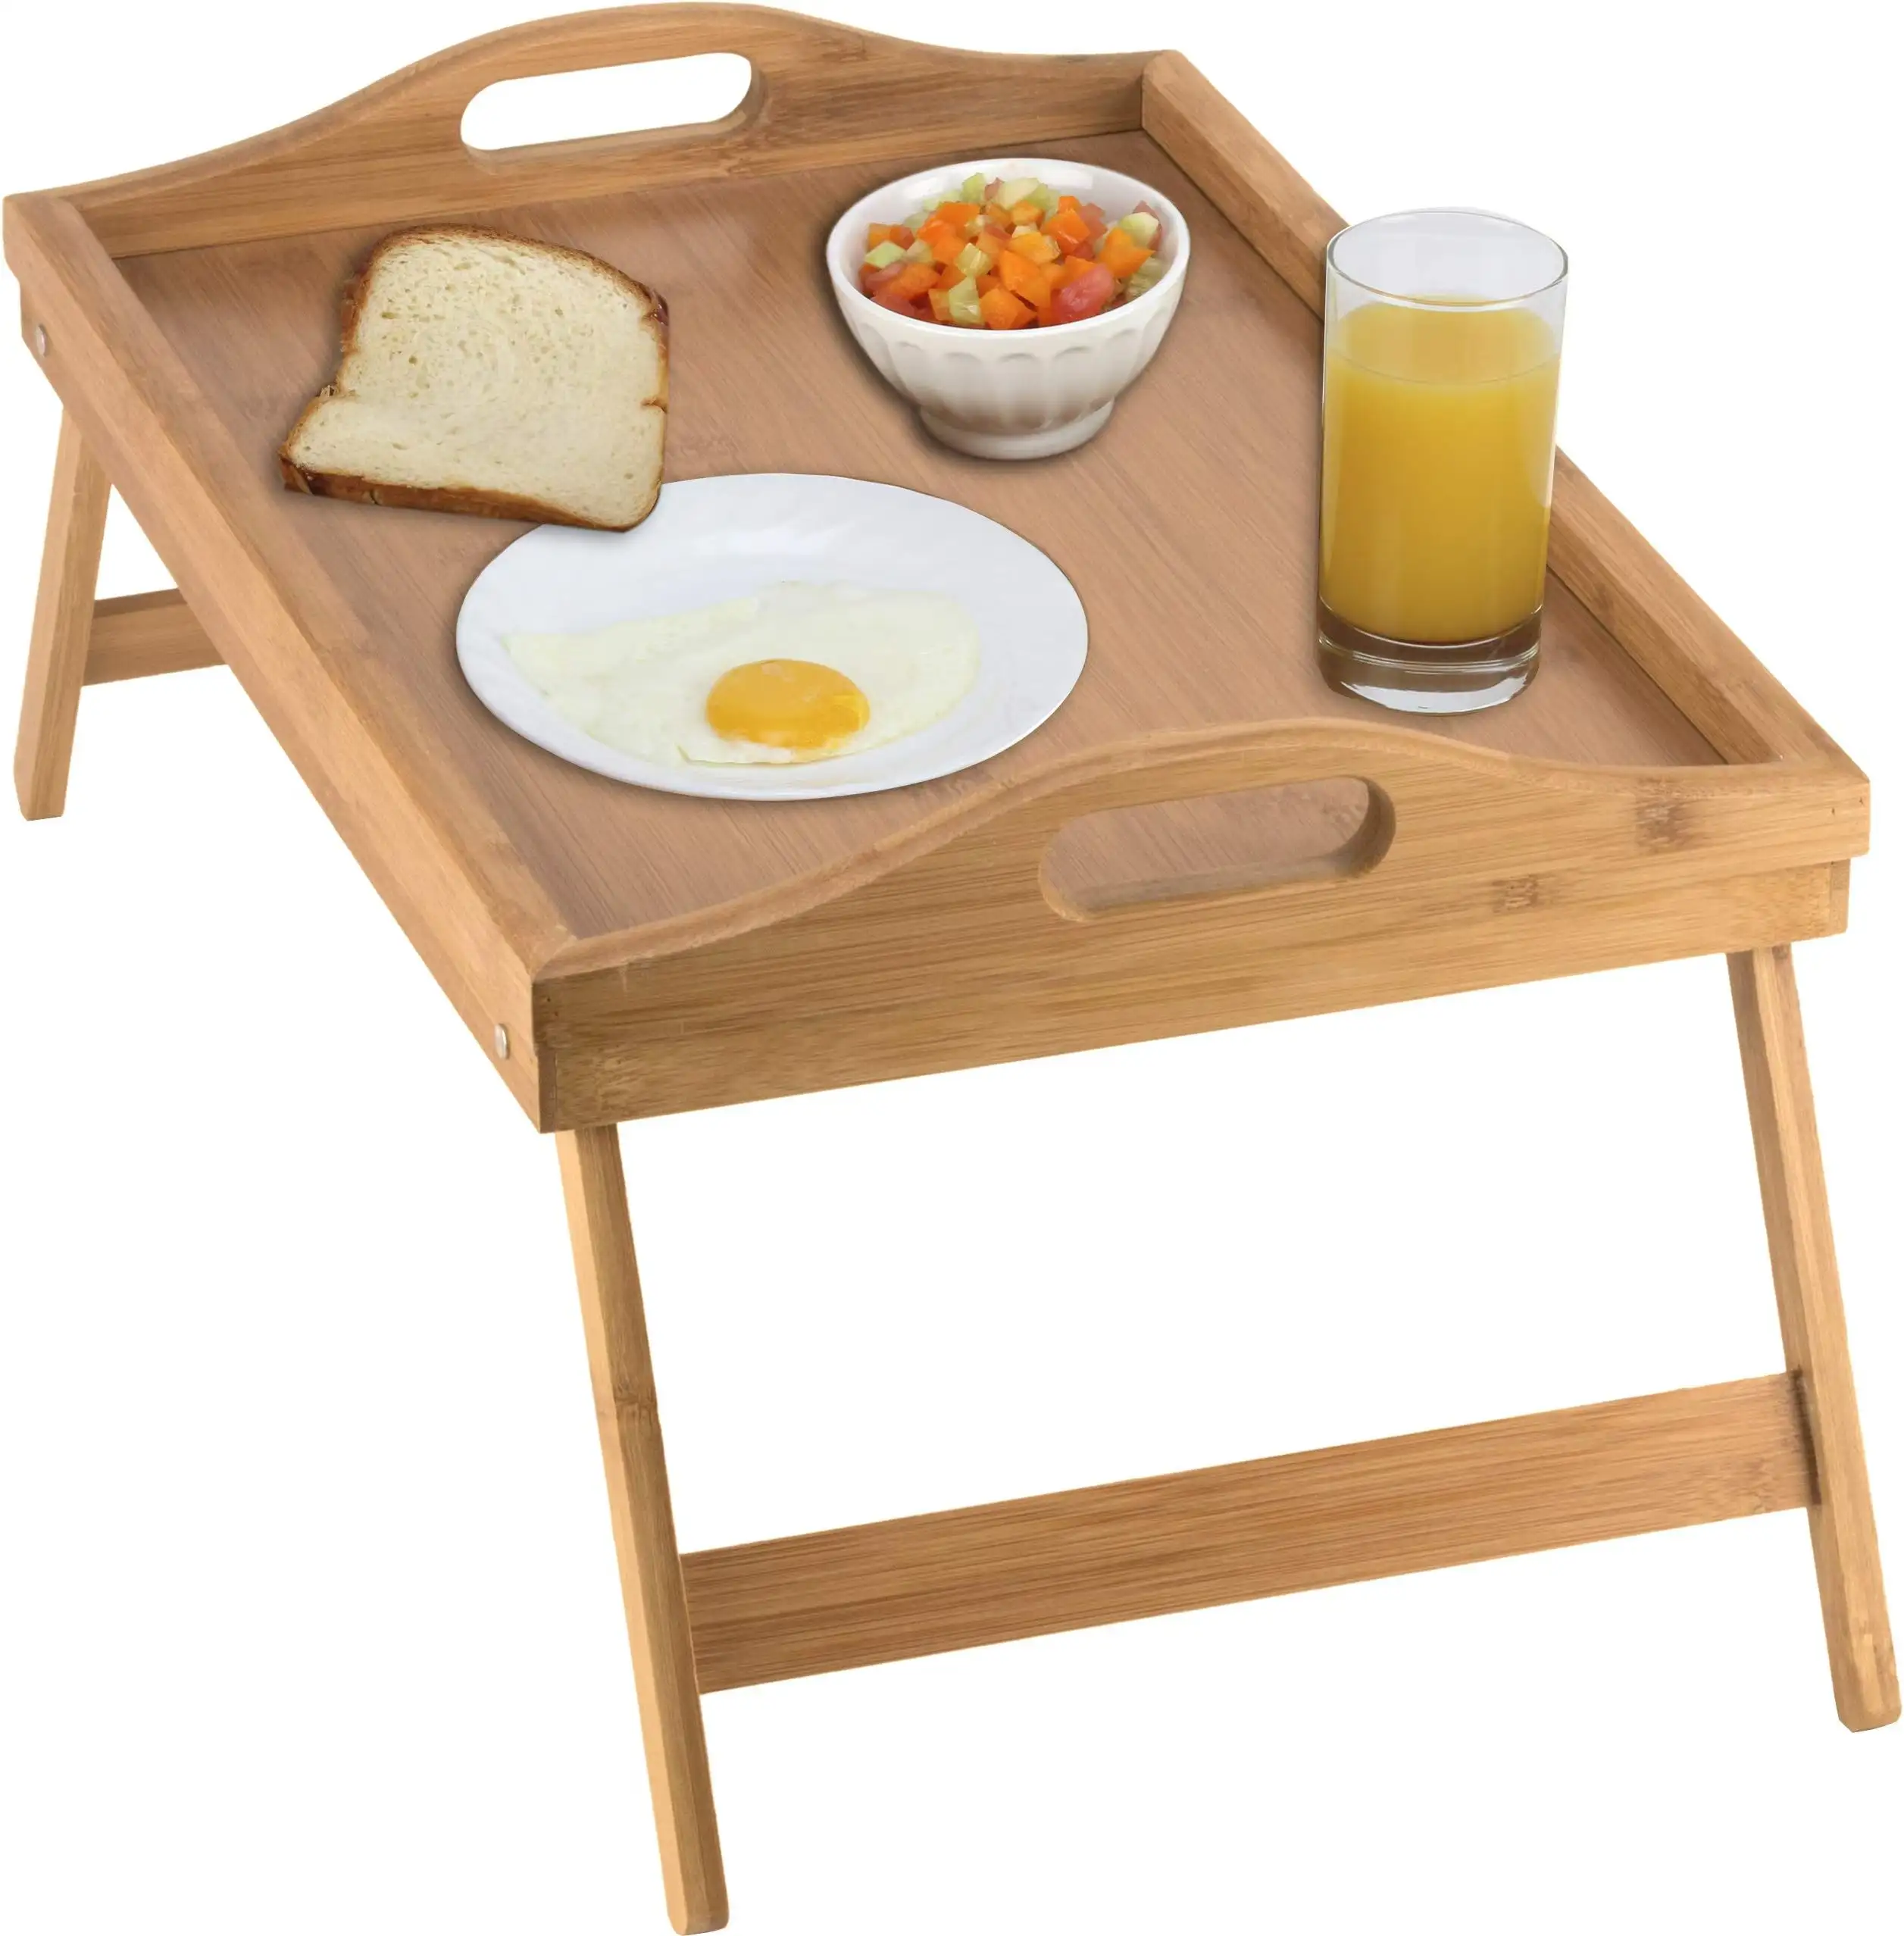 درج سرير خشبي صغير لطاولة طعام للكسولين محمول مع قدم من الخيزران لدفتر الملاحظات في السكني تستخدم في المناسبات